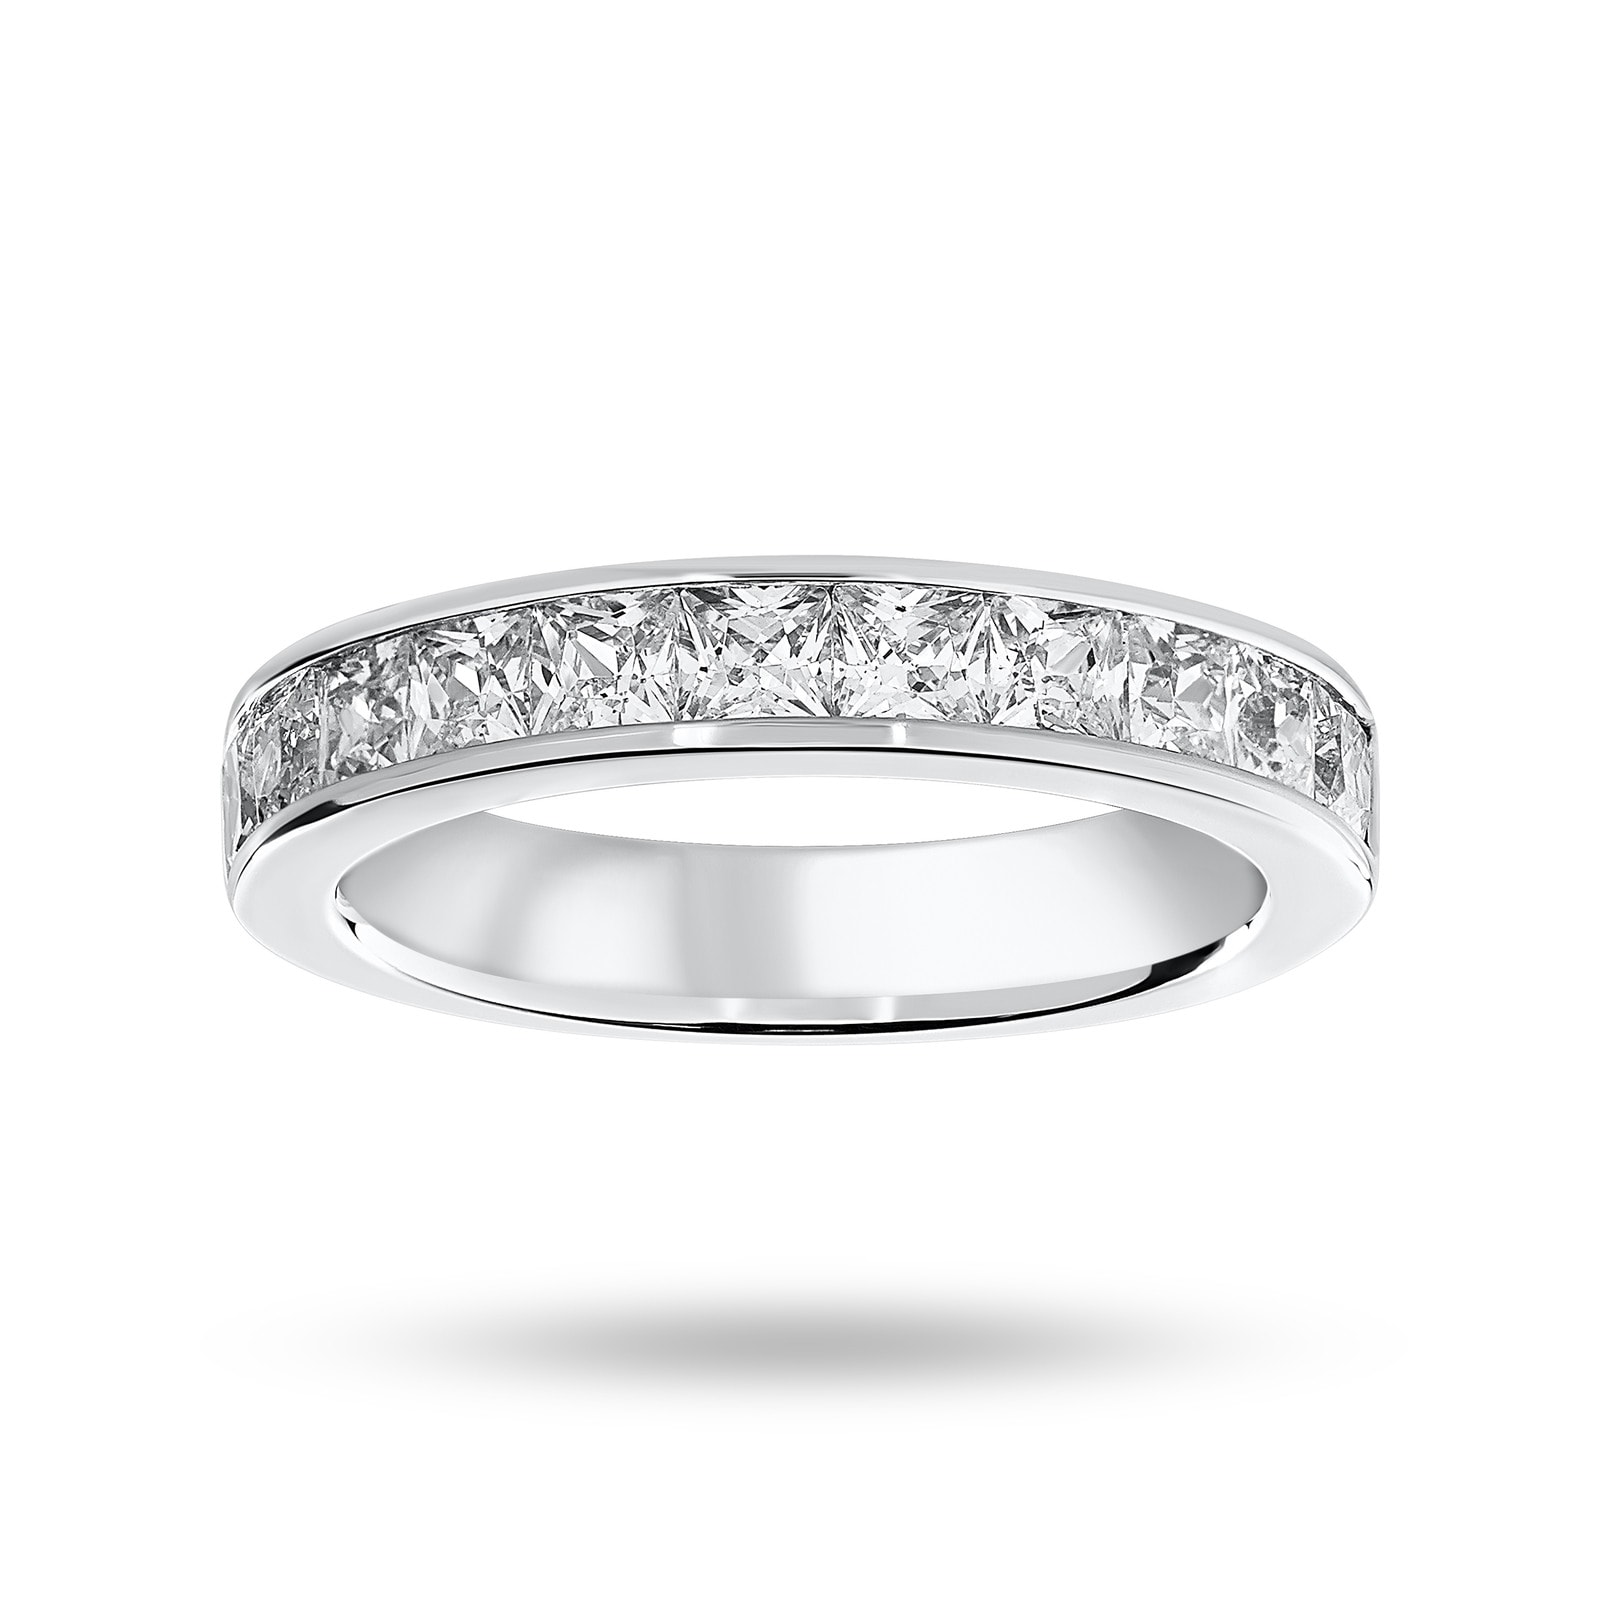 9 Carat White Gold 1.50 Carat Princess Cut Half Eternity Ring - Ring Size N